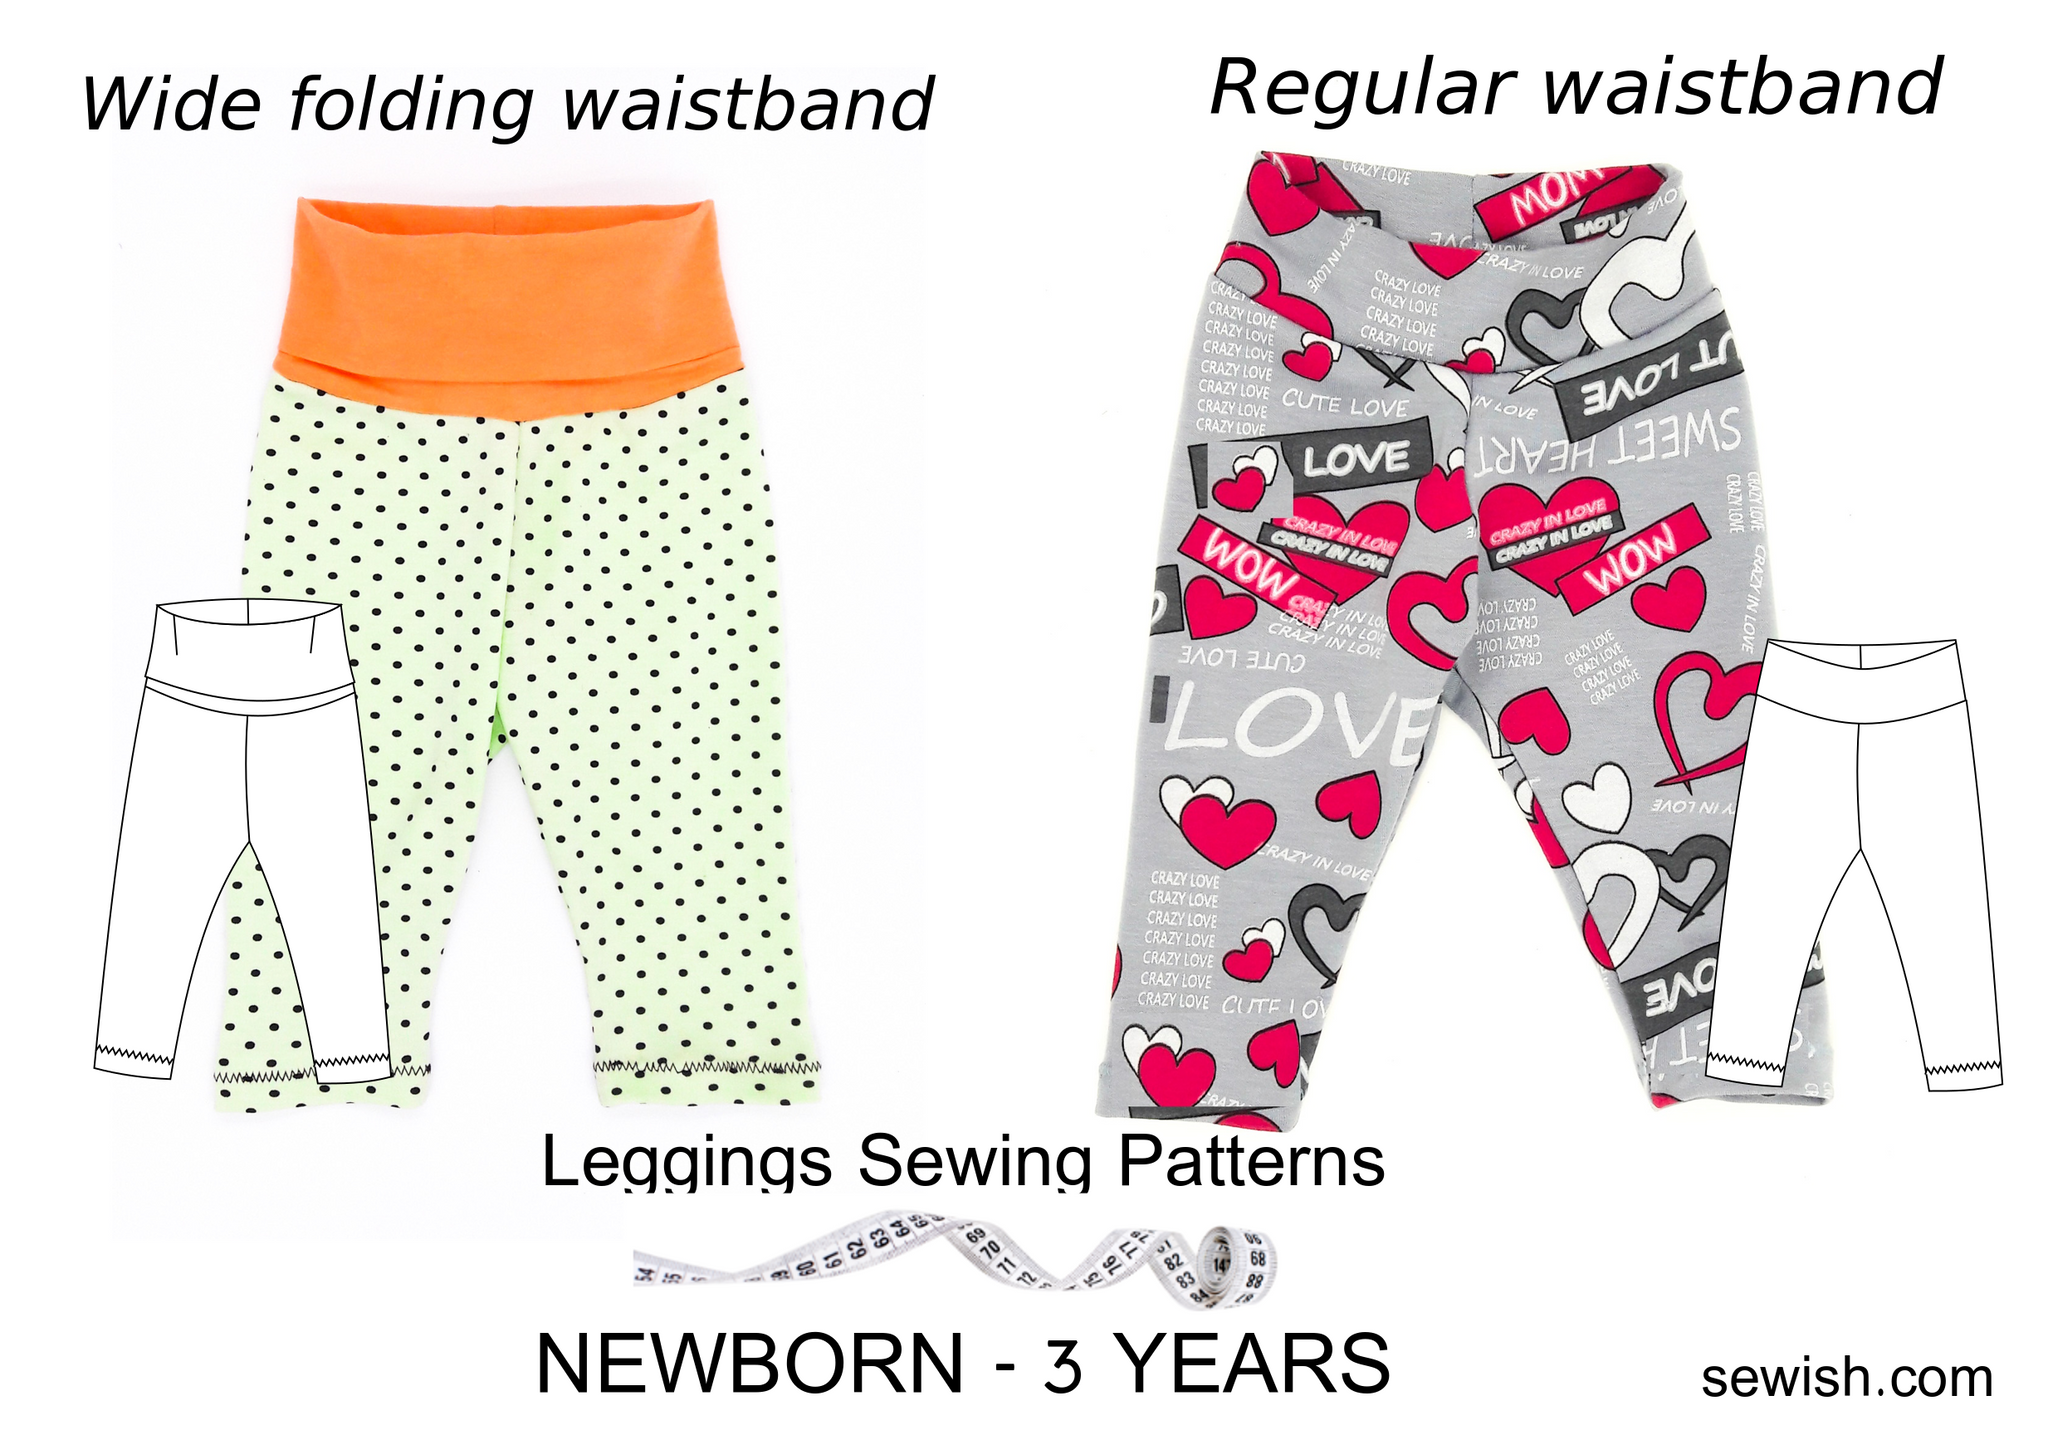 25 Leggings Sewing Patterns for Women, Kids, Men (9 FREE!)